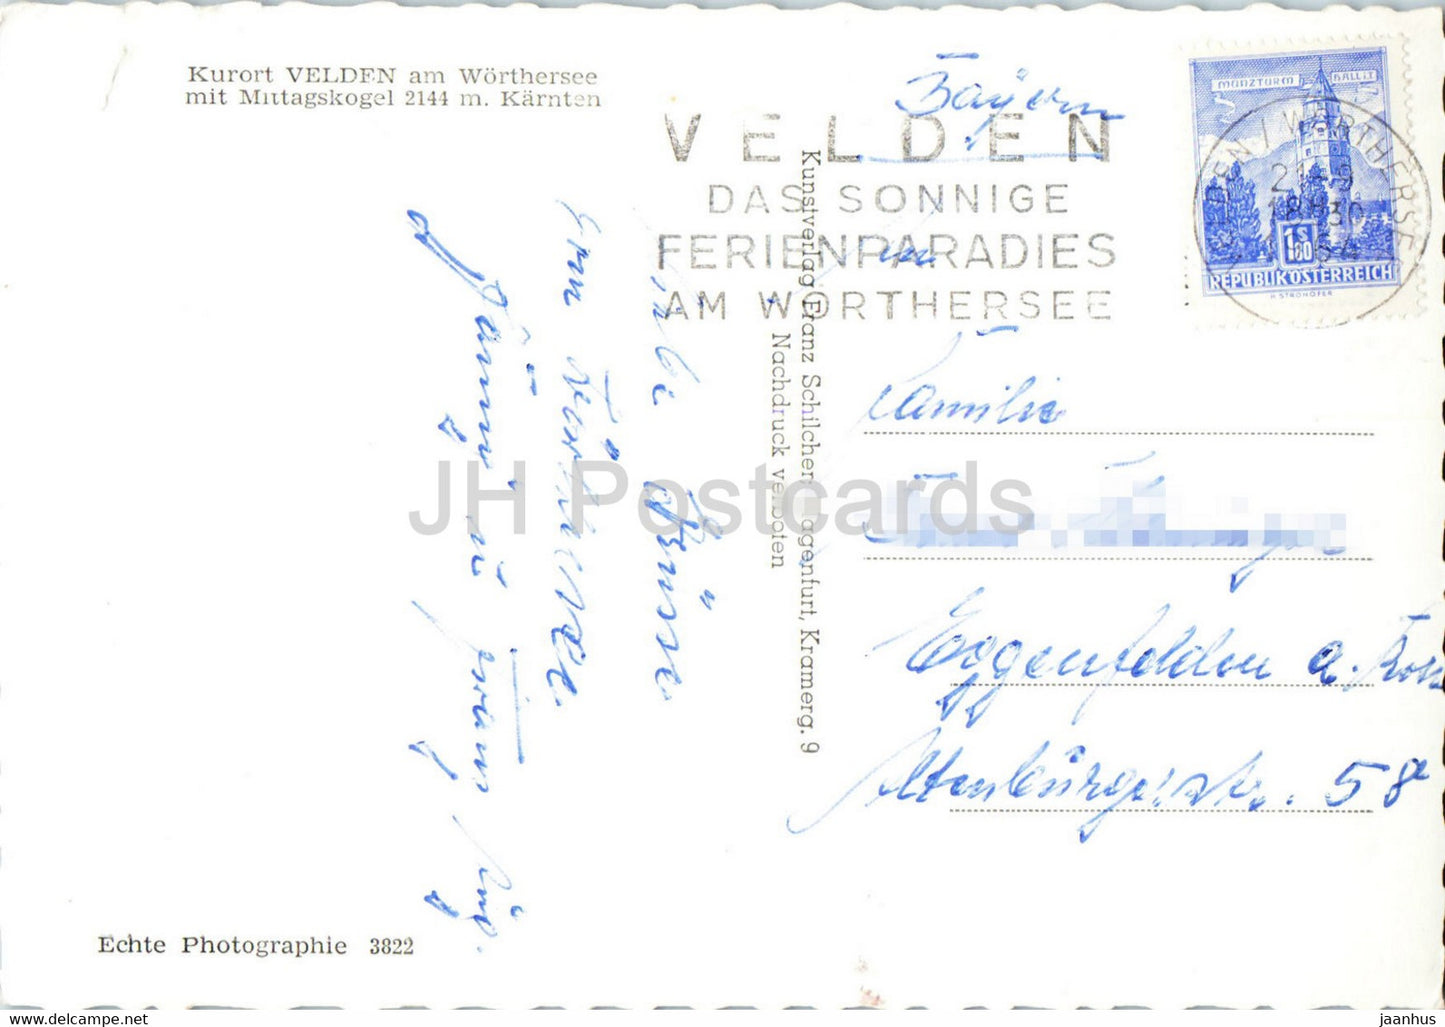 Kurort Velden am Wörthersee mit Mittagskogel 2144 m - alte Postkarte - 1964 - Österreich - gebraucht